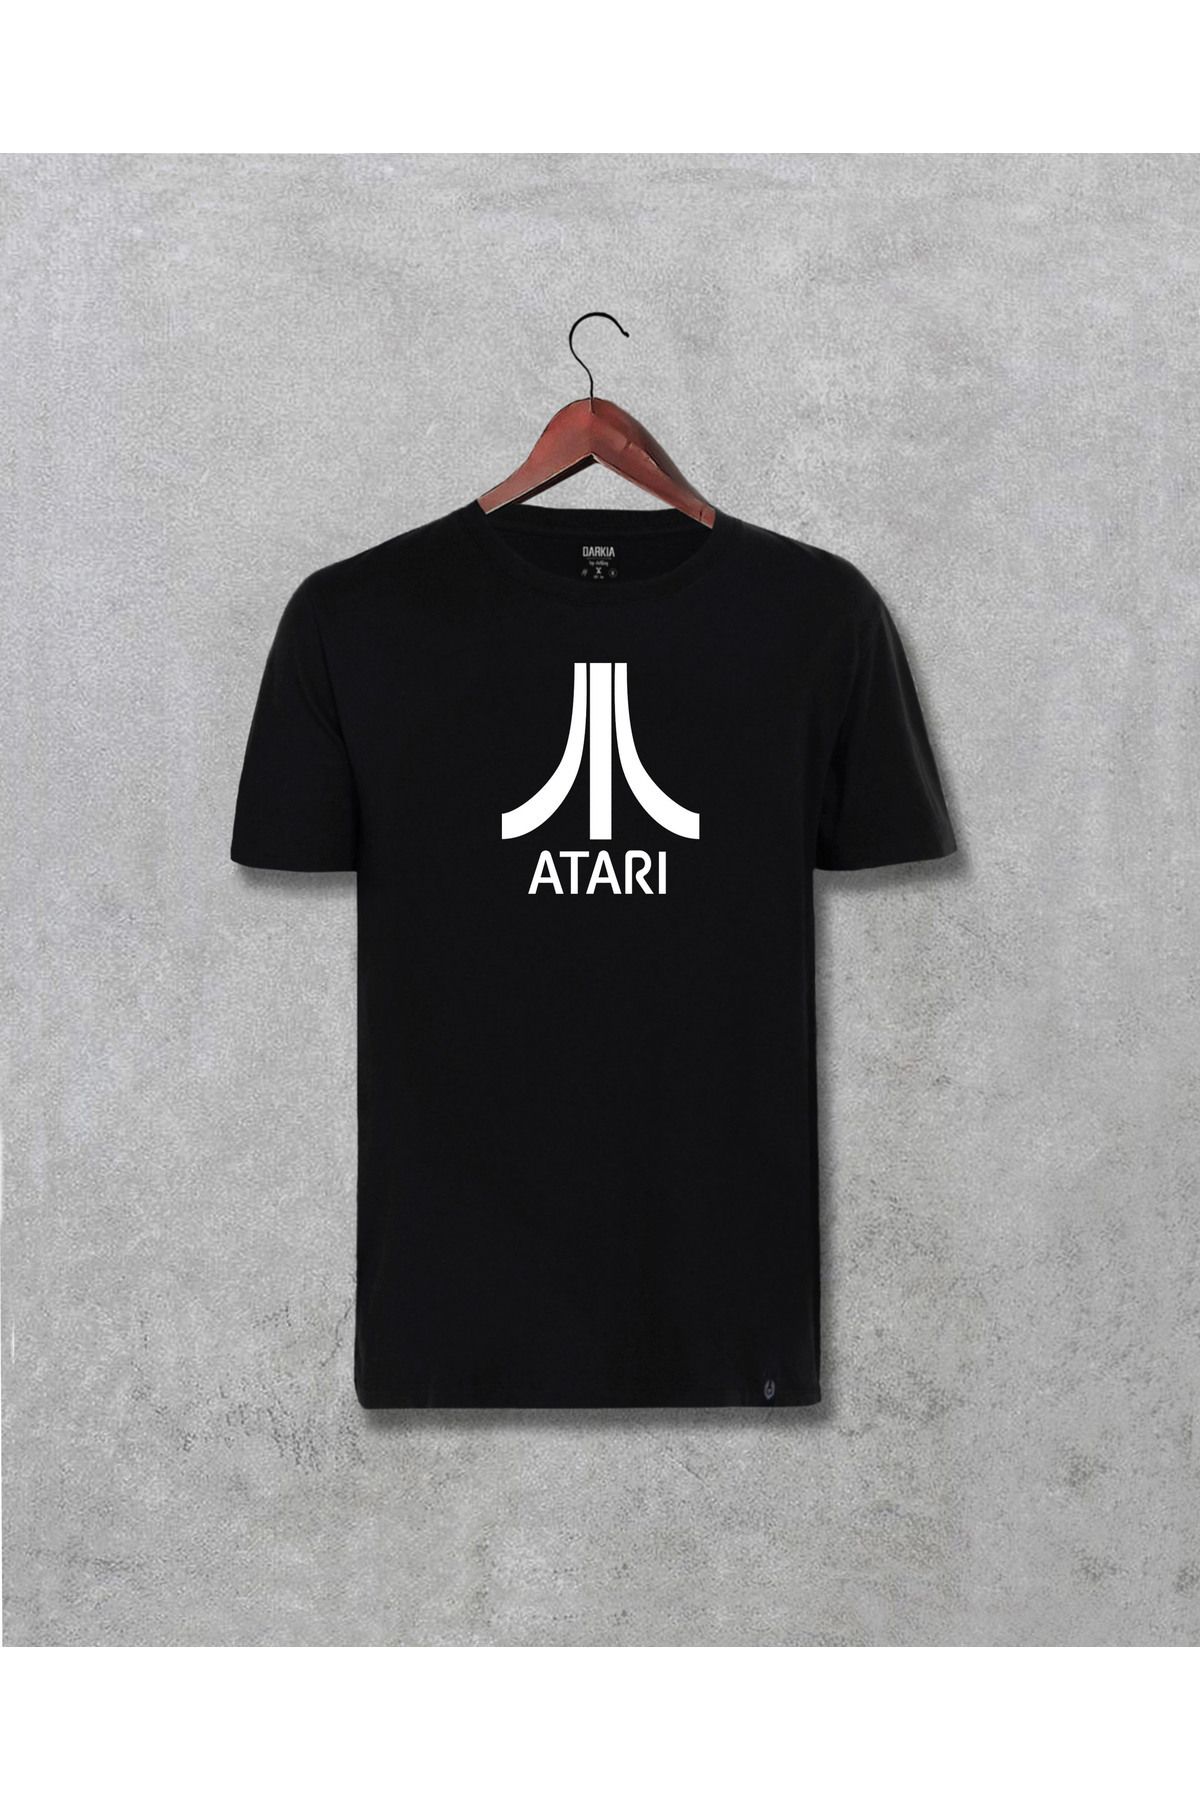 NOVVO Atari Logo Tasarım Baskılı Unisex Tişört